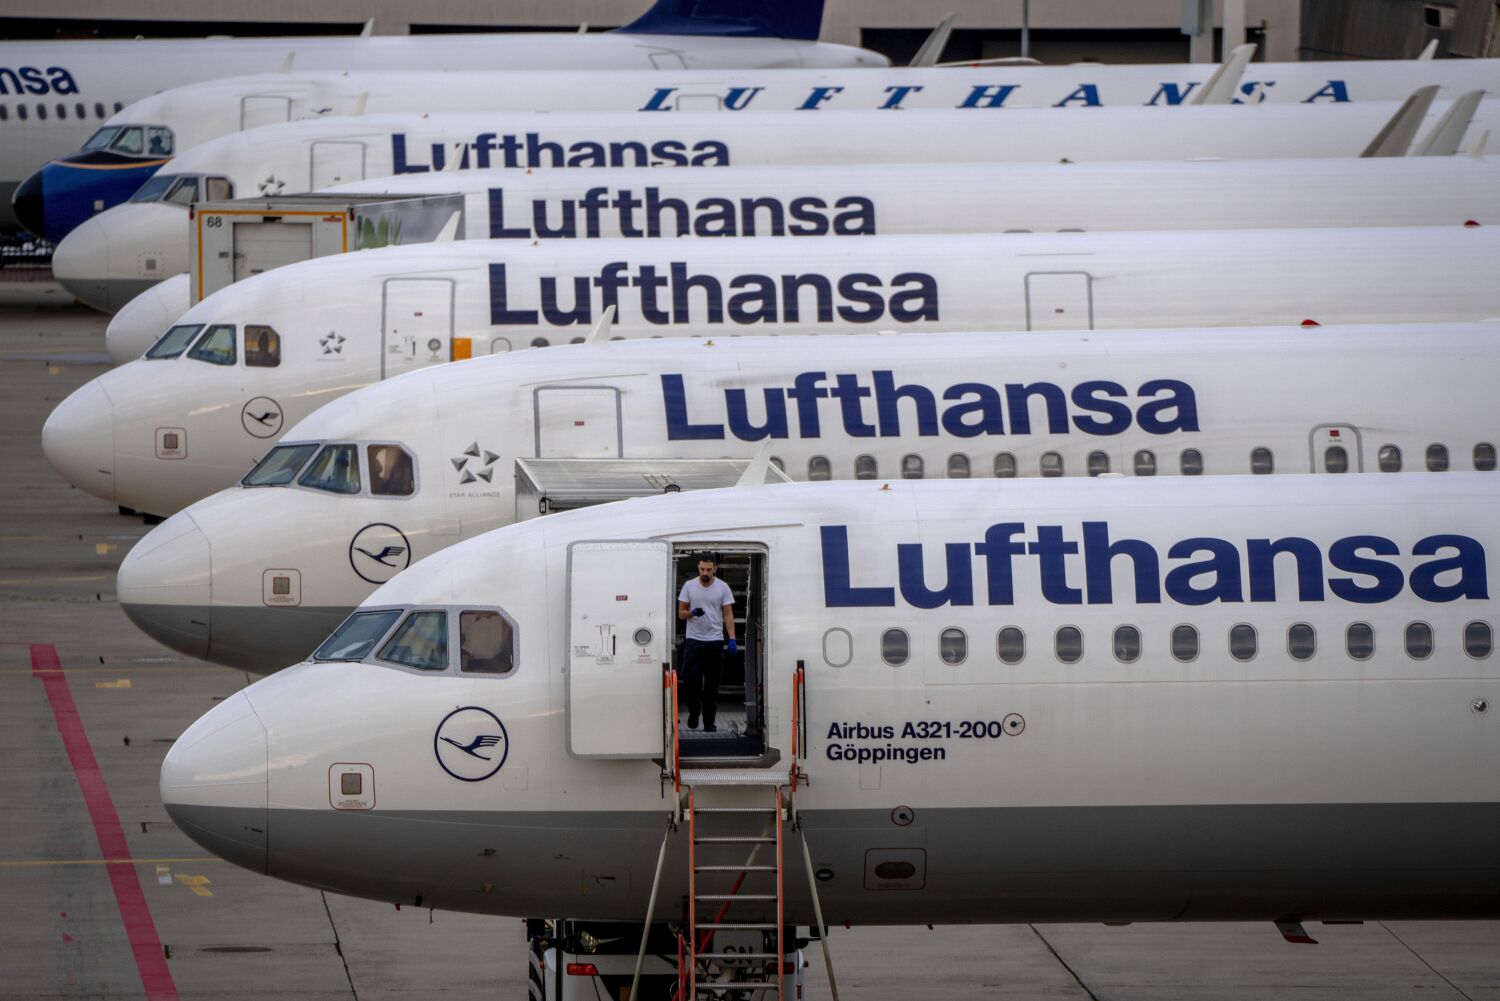 Avrupa havayolu Lufthansa, kontrol edilen bagajlarda Apple AirTags'i yasakladı